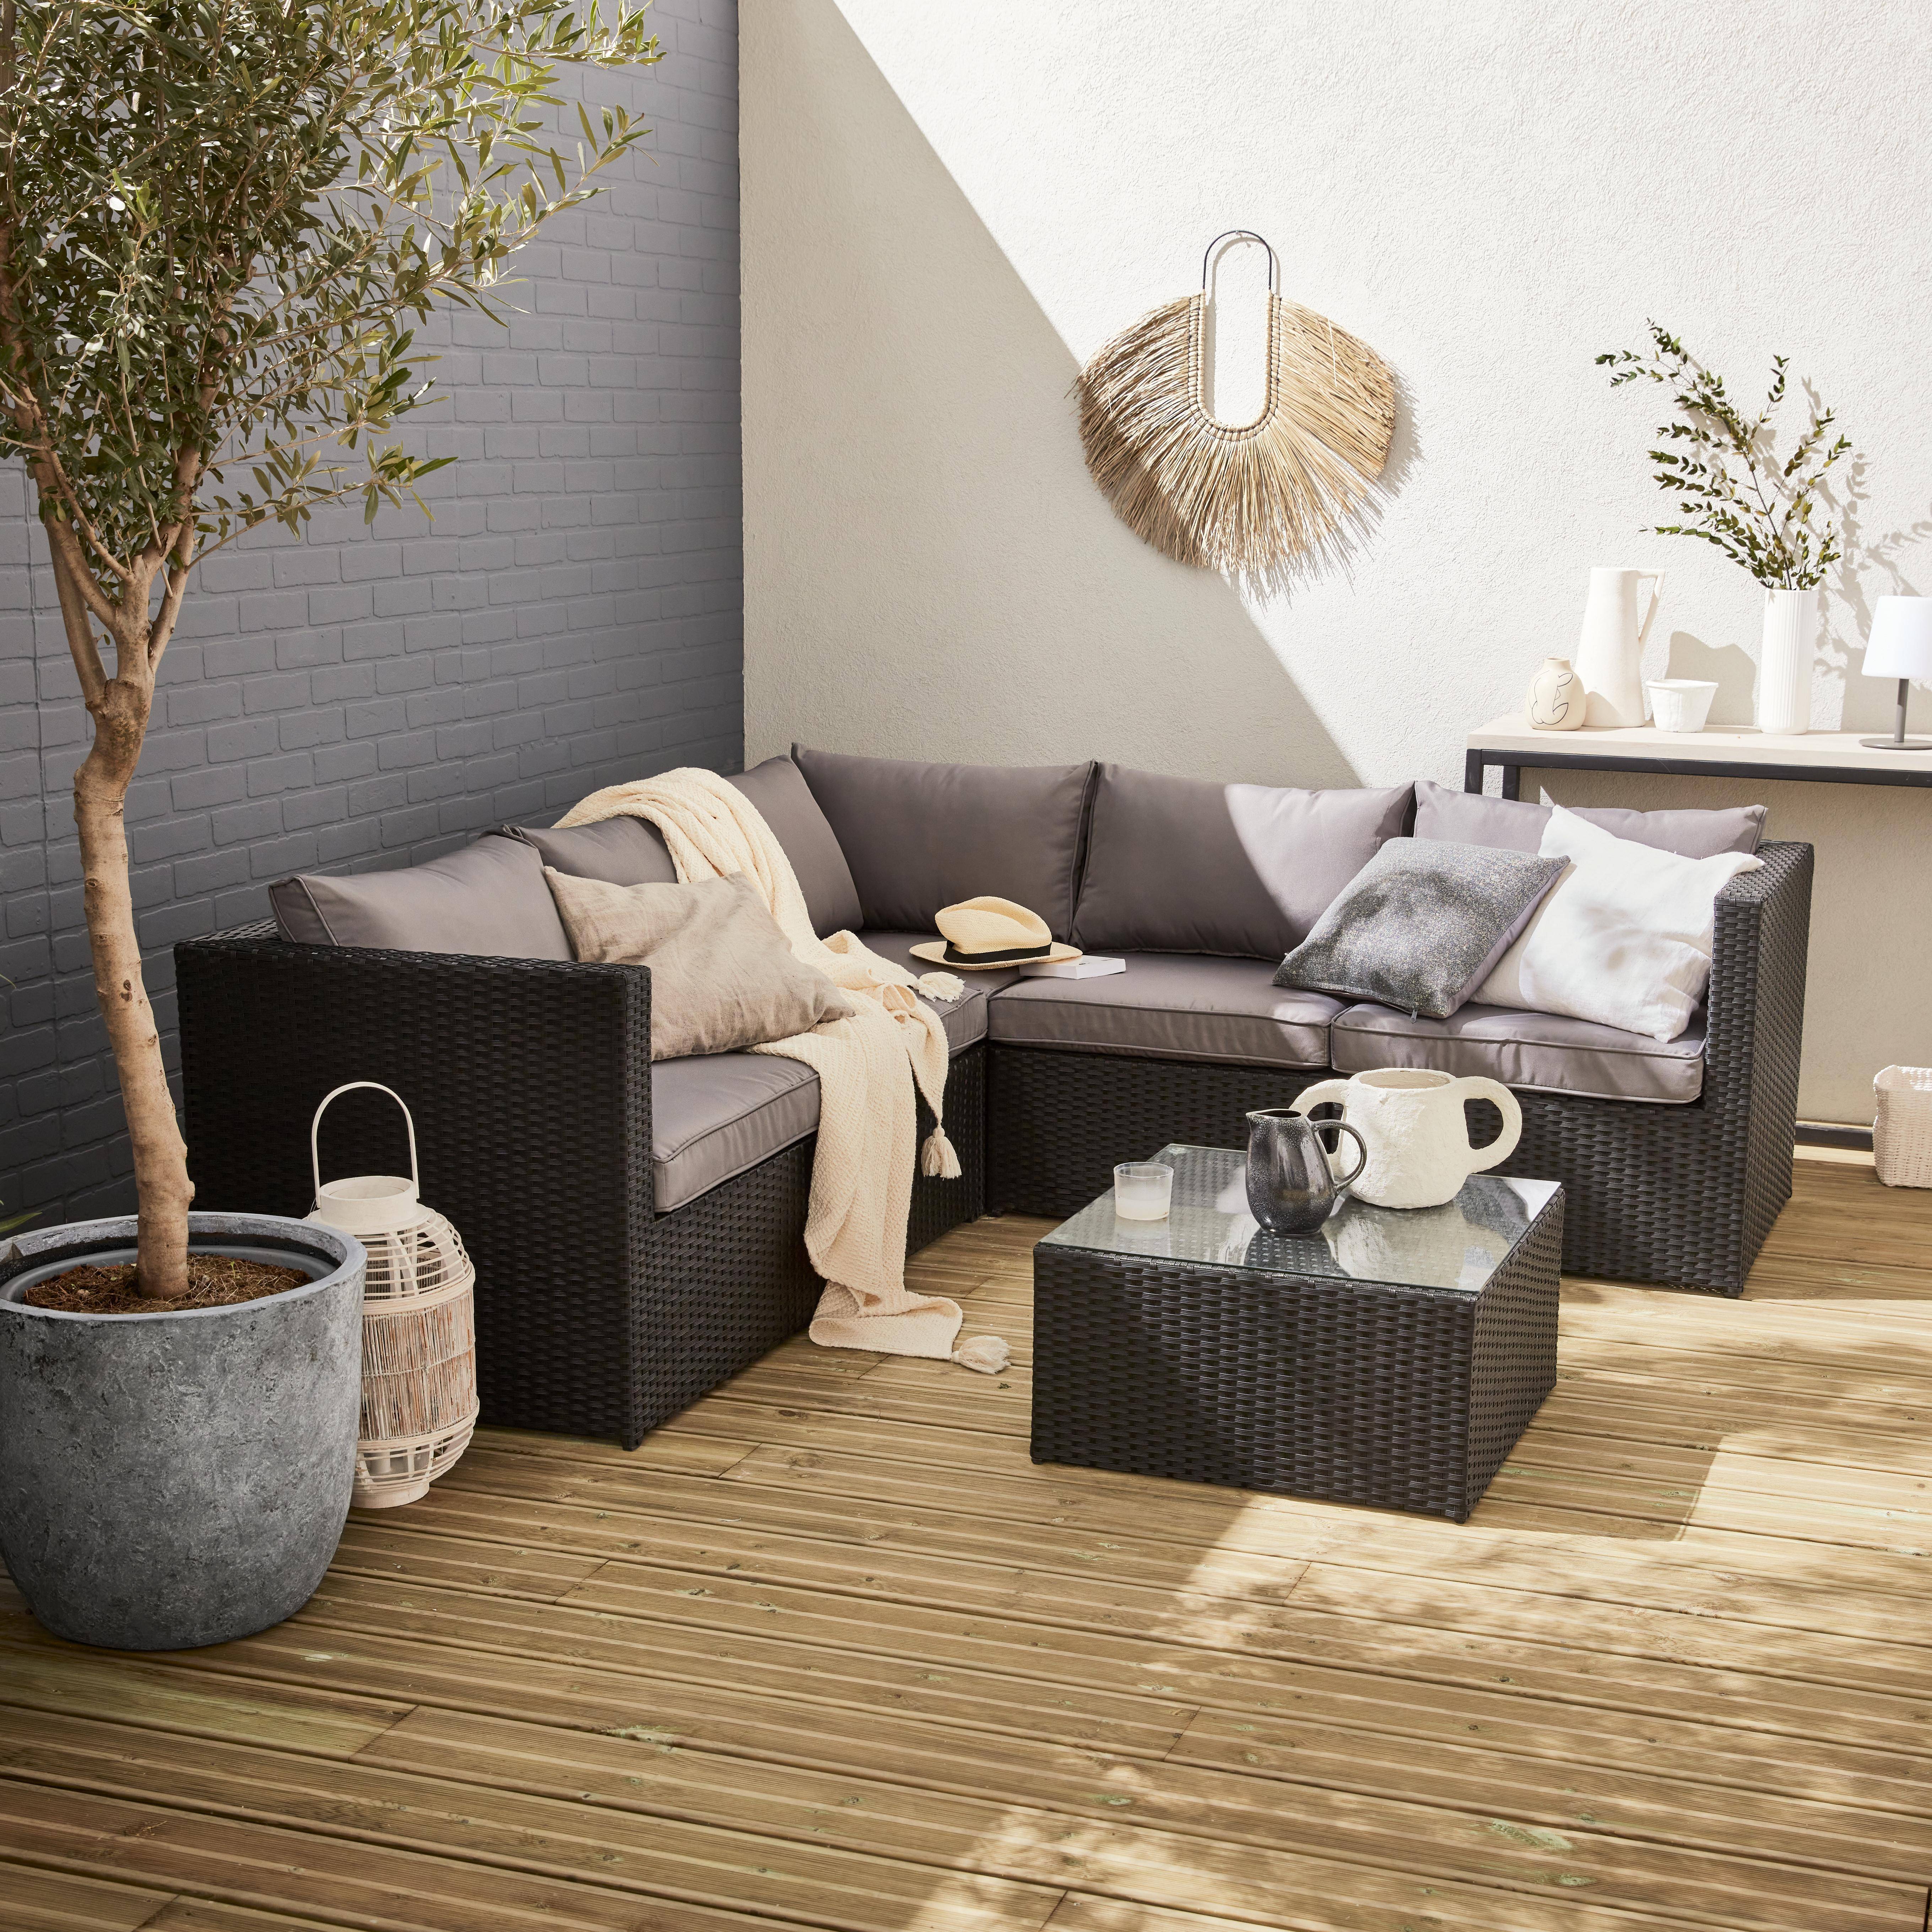 Conjunto de jardin, conjunto sofa de exterior, Negro Gris, 5 plazas, Dimensiones y Cojines Confortable - Siena Photo1